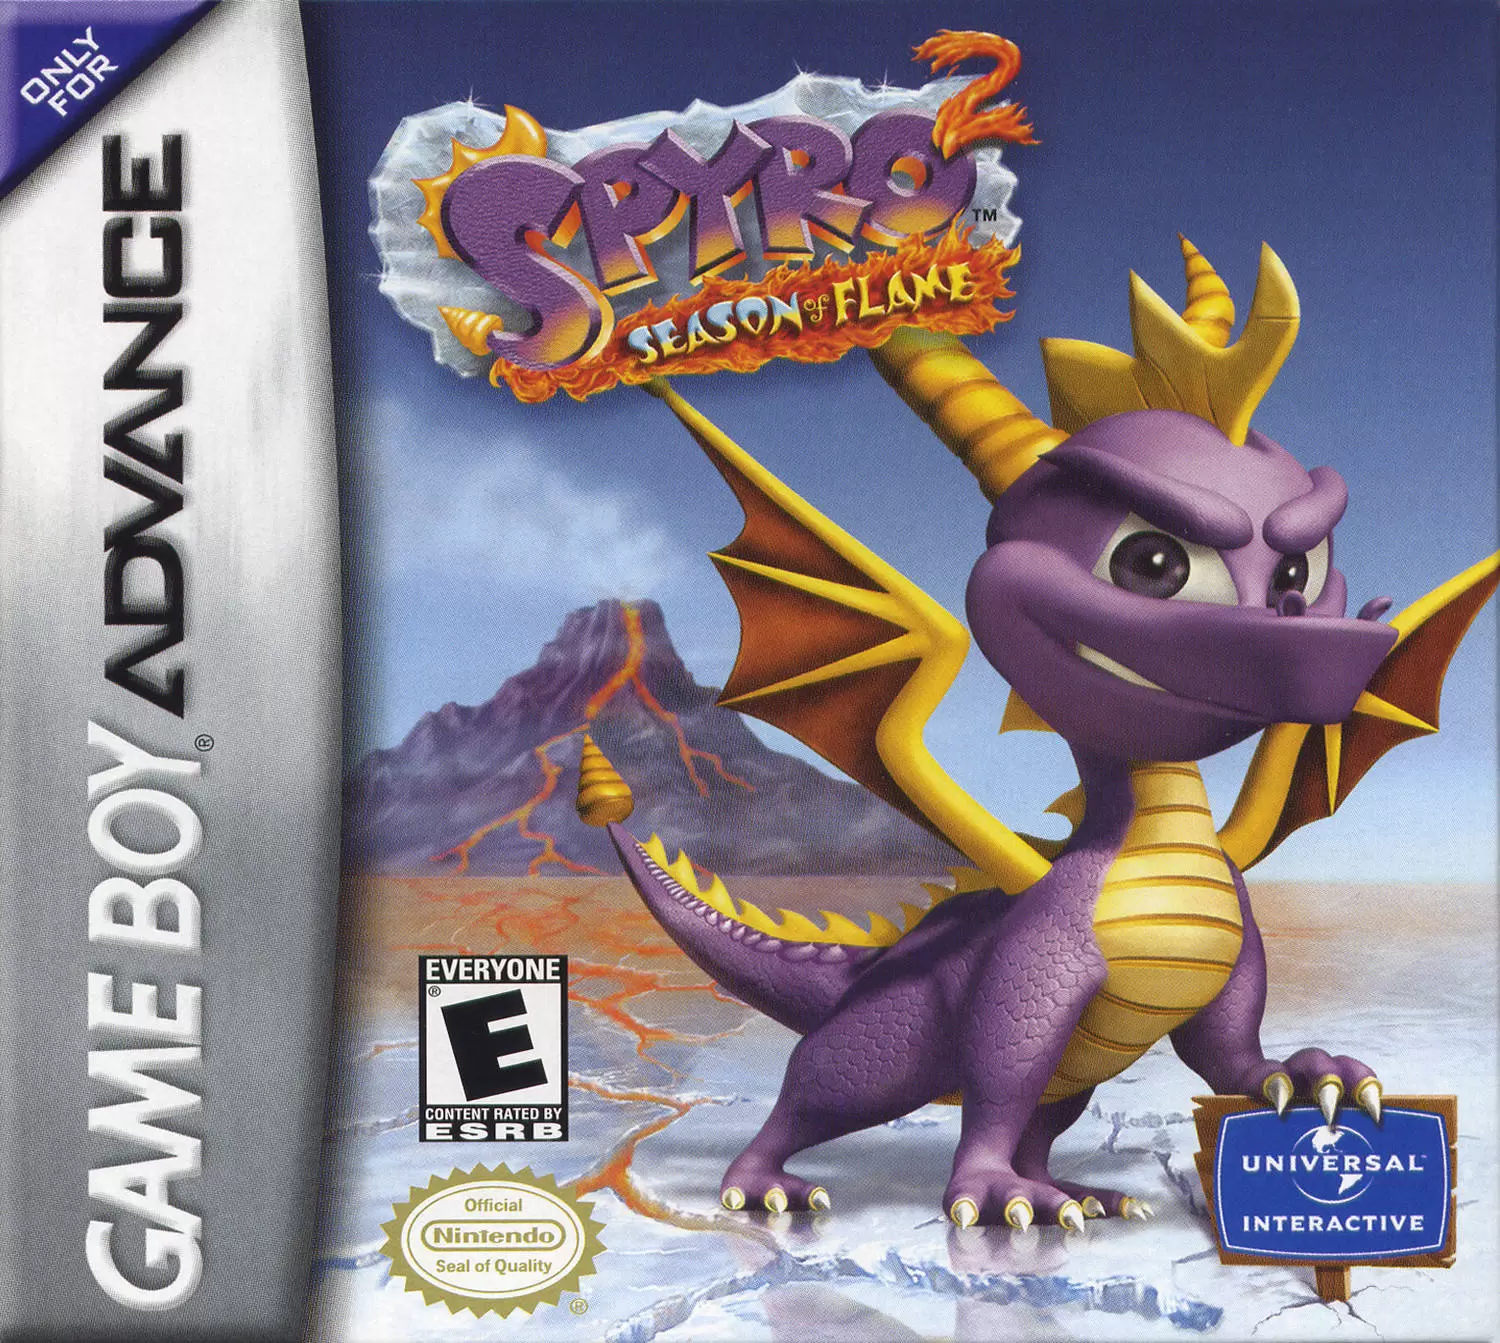 Game Boy Advance Games - Spyro 2: Season of Flame